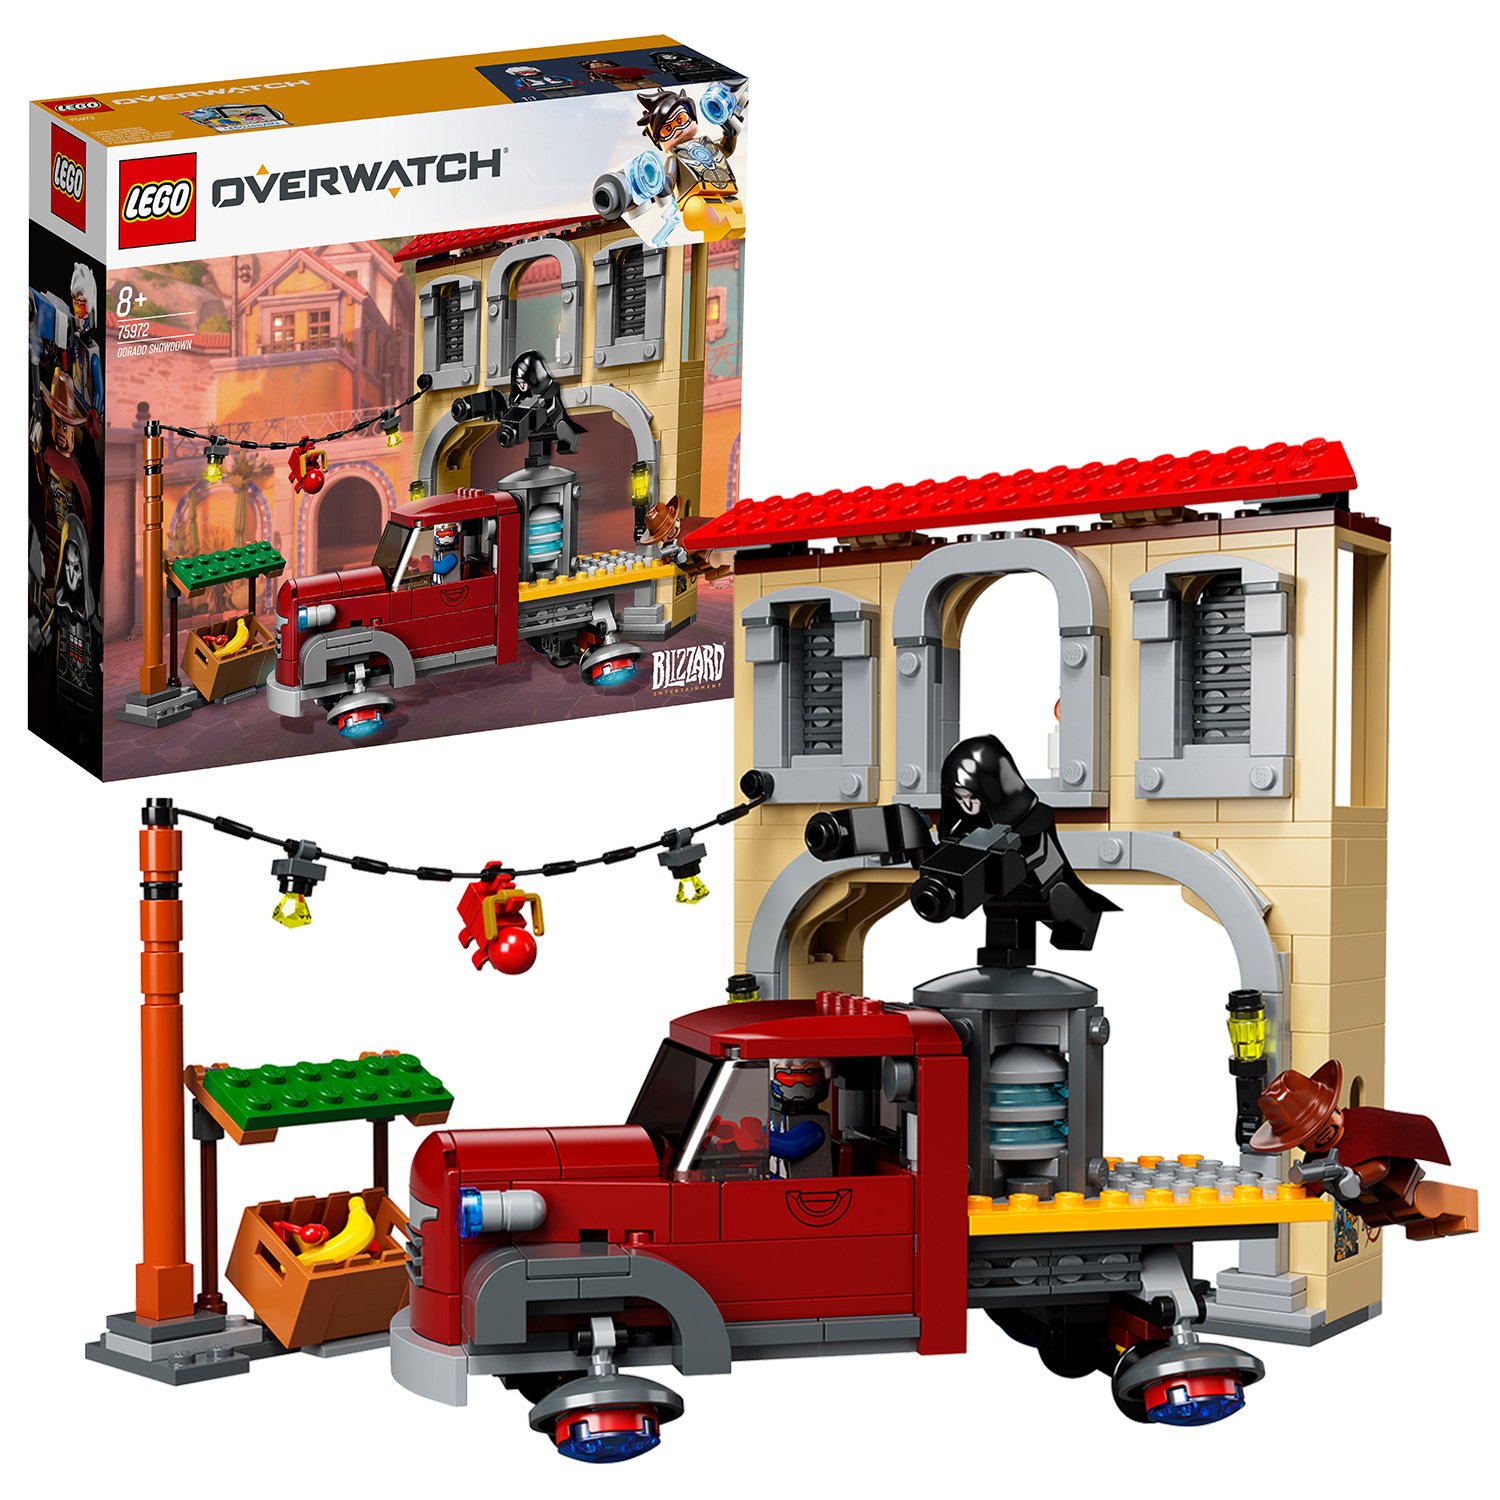 LEGO Overwatch Dorado Showdown Set Toy - 75972